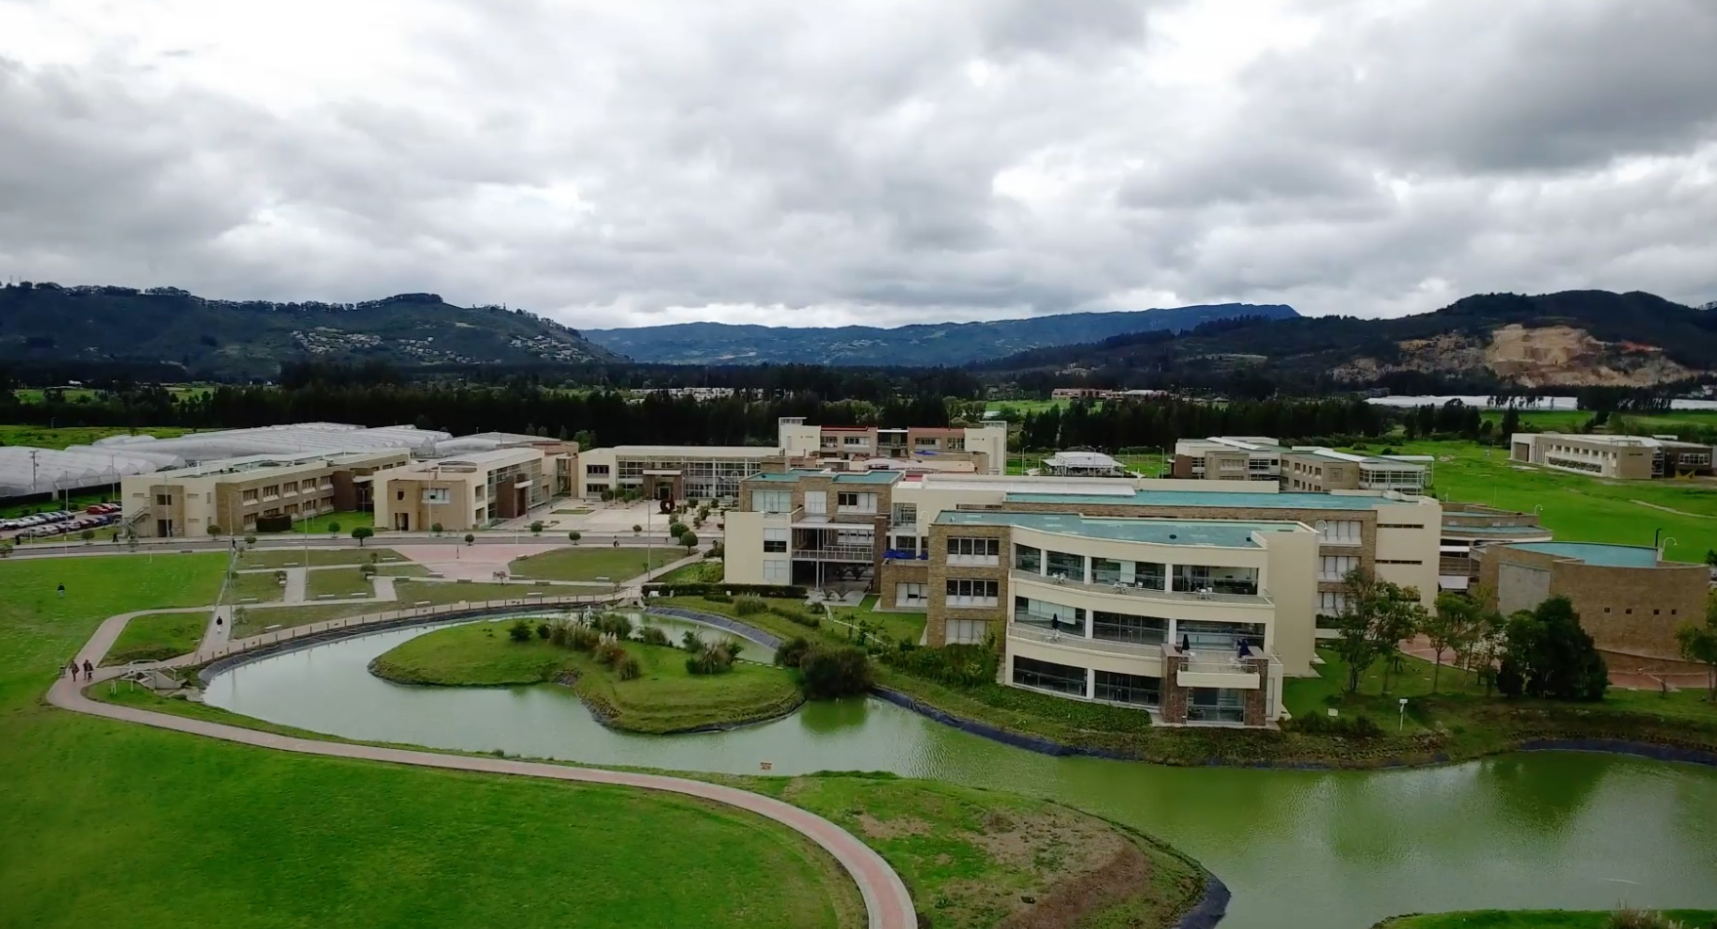 Universidad Militar Nueva Granada Preparada para Elegir Nuevo Rector tras Fallo del Consejo de Estado